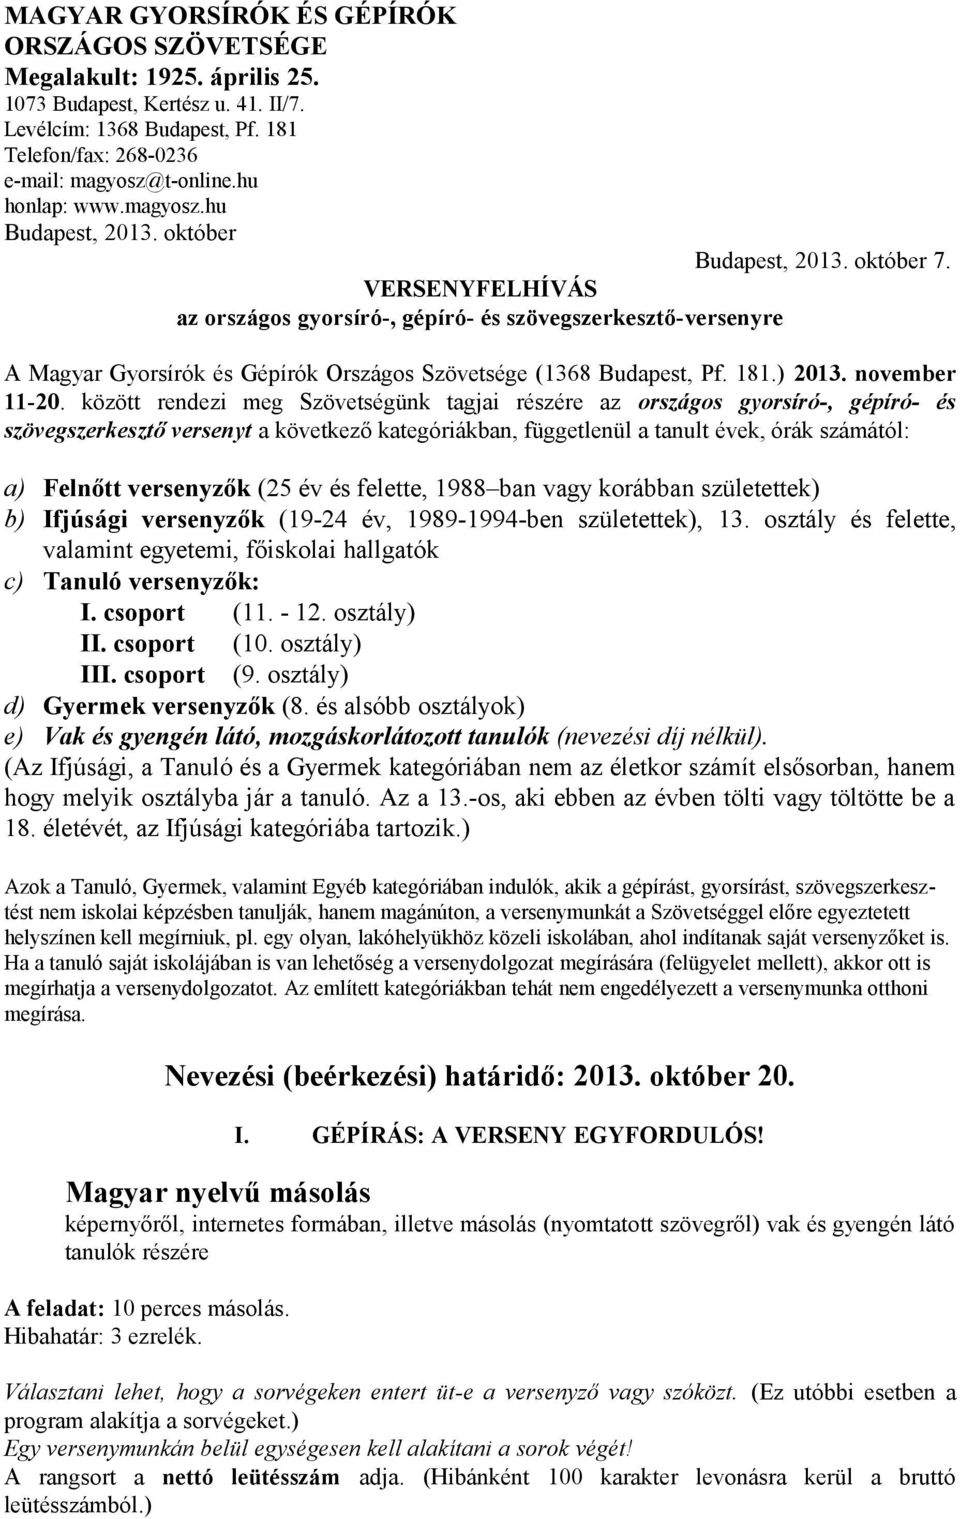 A Magyar Gyorsírók és Gépírók Országos Szövetsége (1368 Budapest, Pf. 181.) 2013. november 11-20.